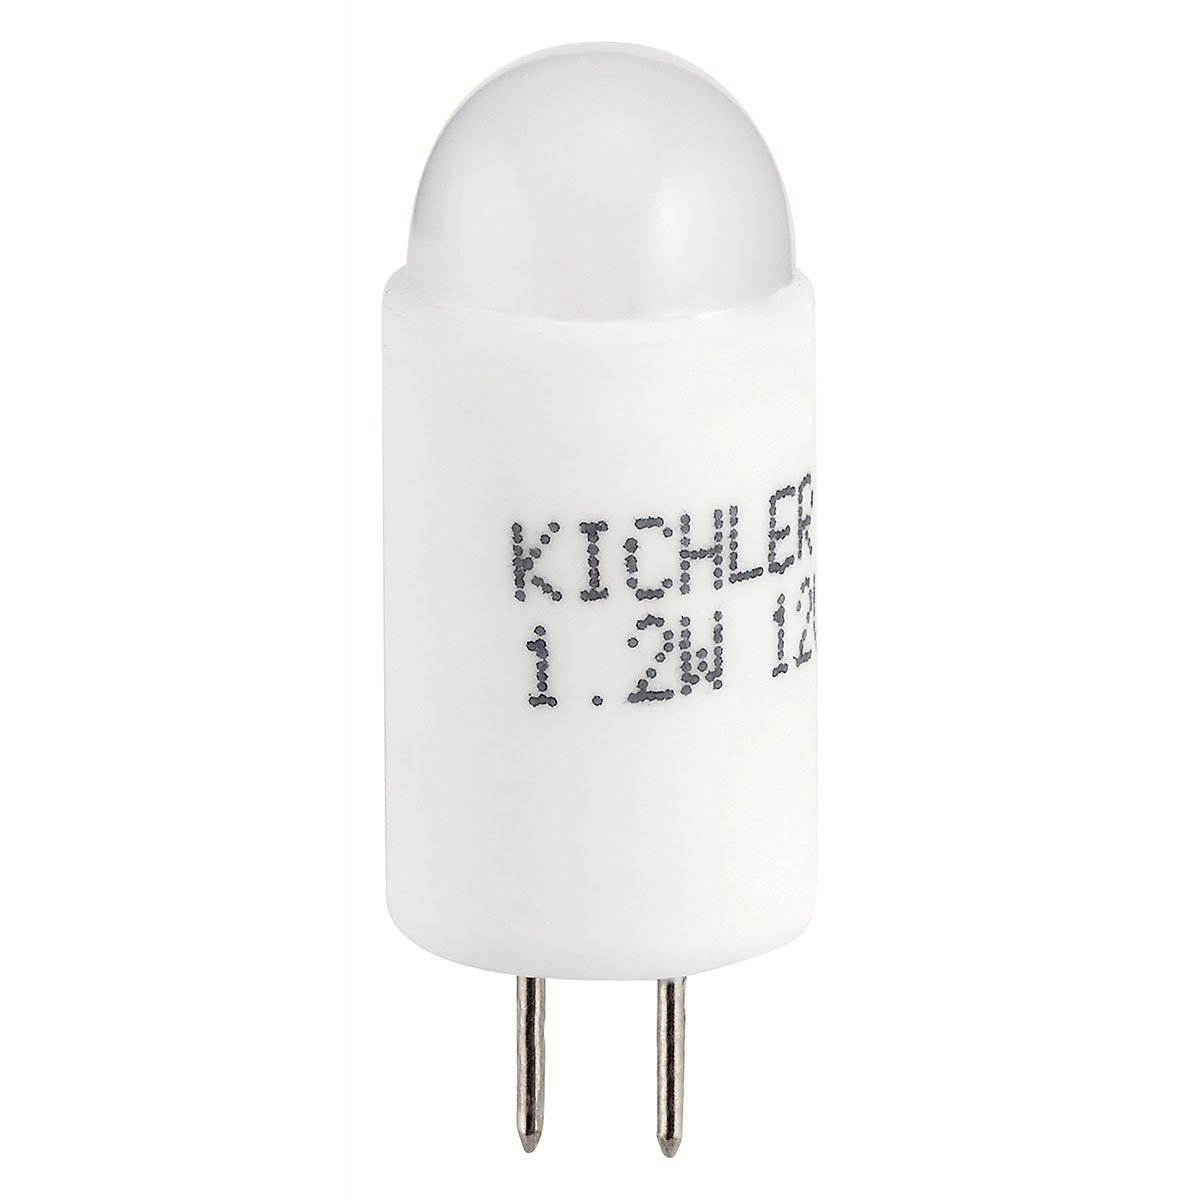 Kichler T3 Micro Ceramic 2700K  Kichler 2700 K  